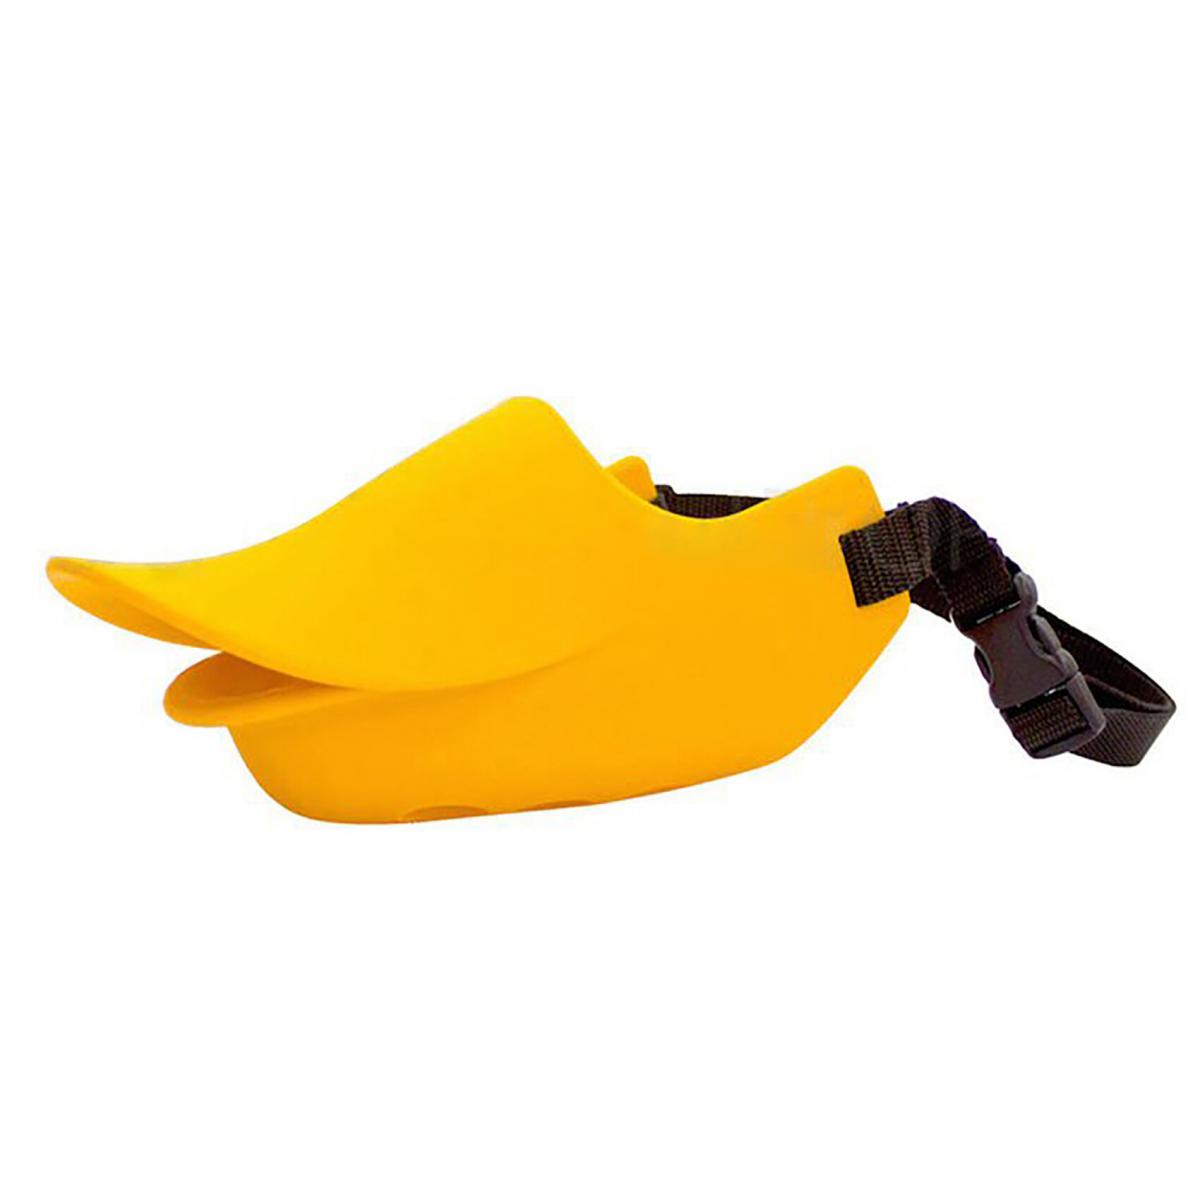 Quack Closed M size (Orange)